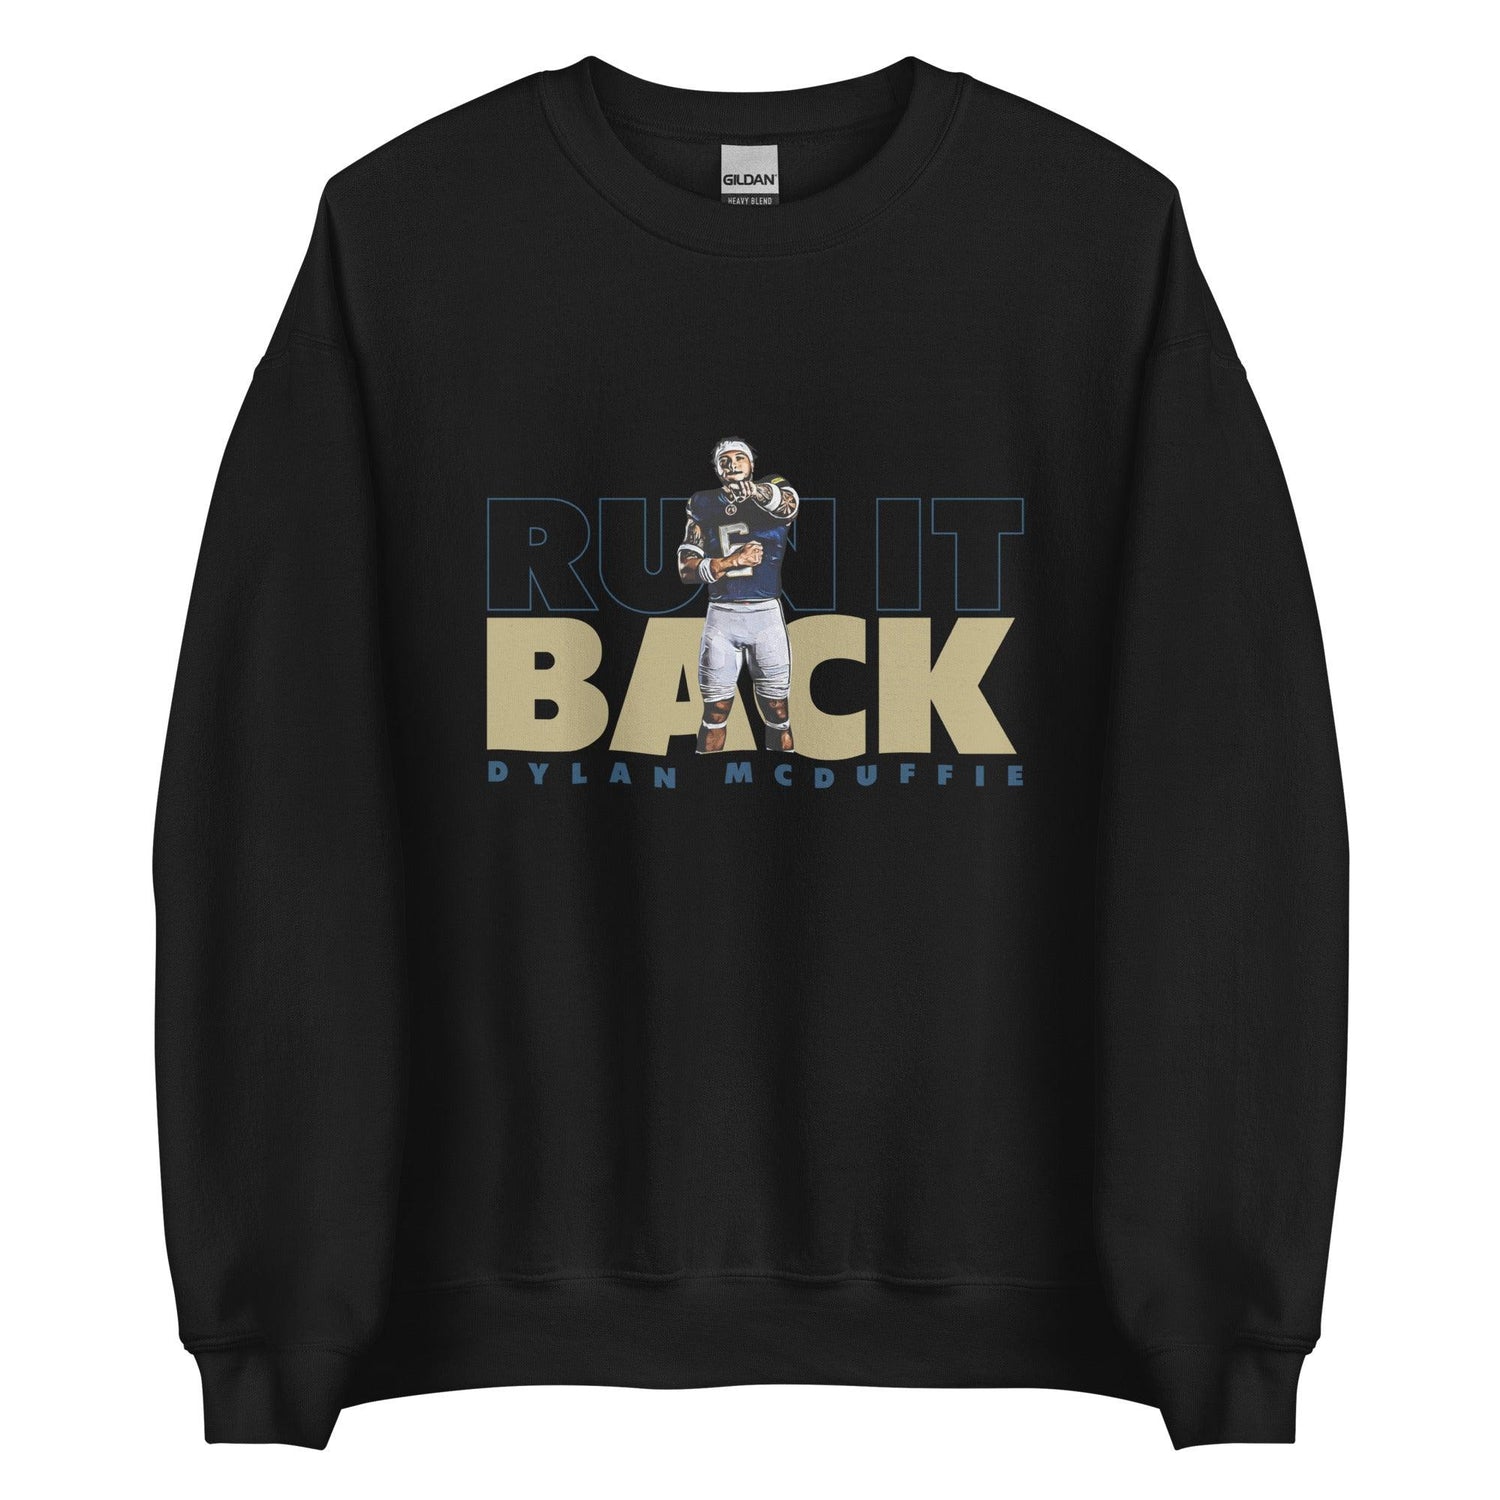 Dylan McDuffie "Run It Back" Sweatshirt - Fan Arch